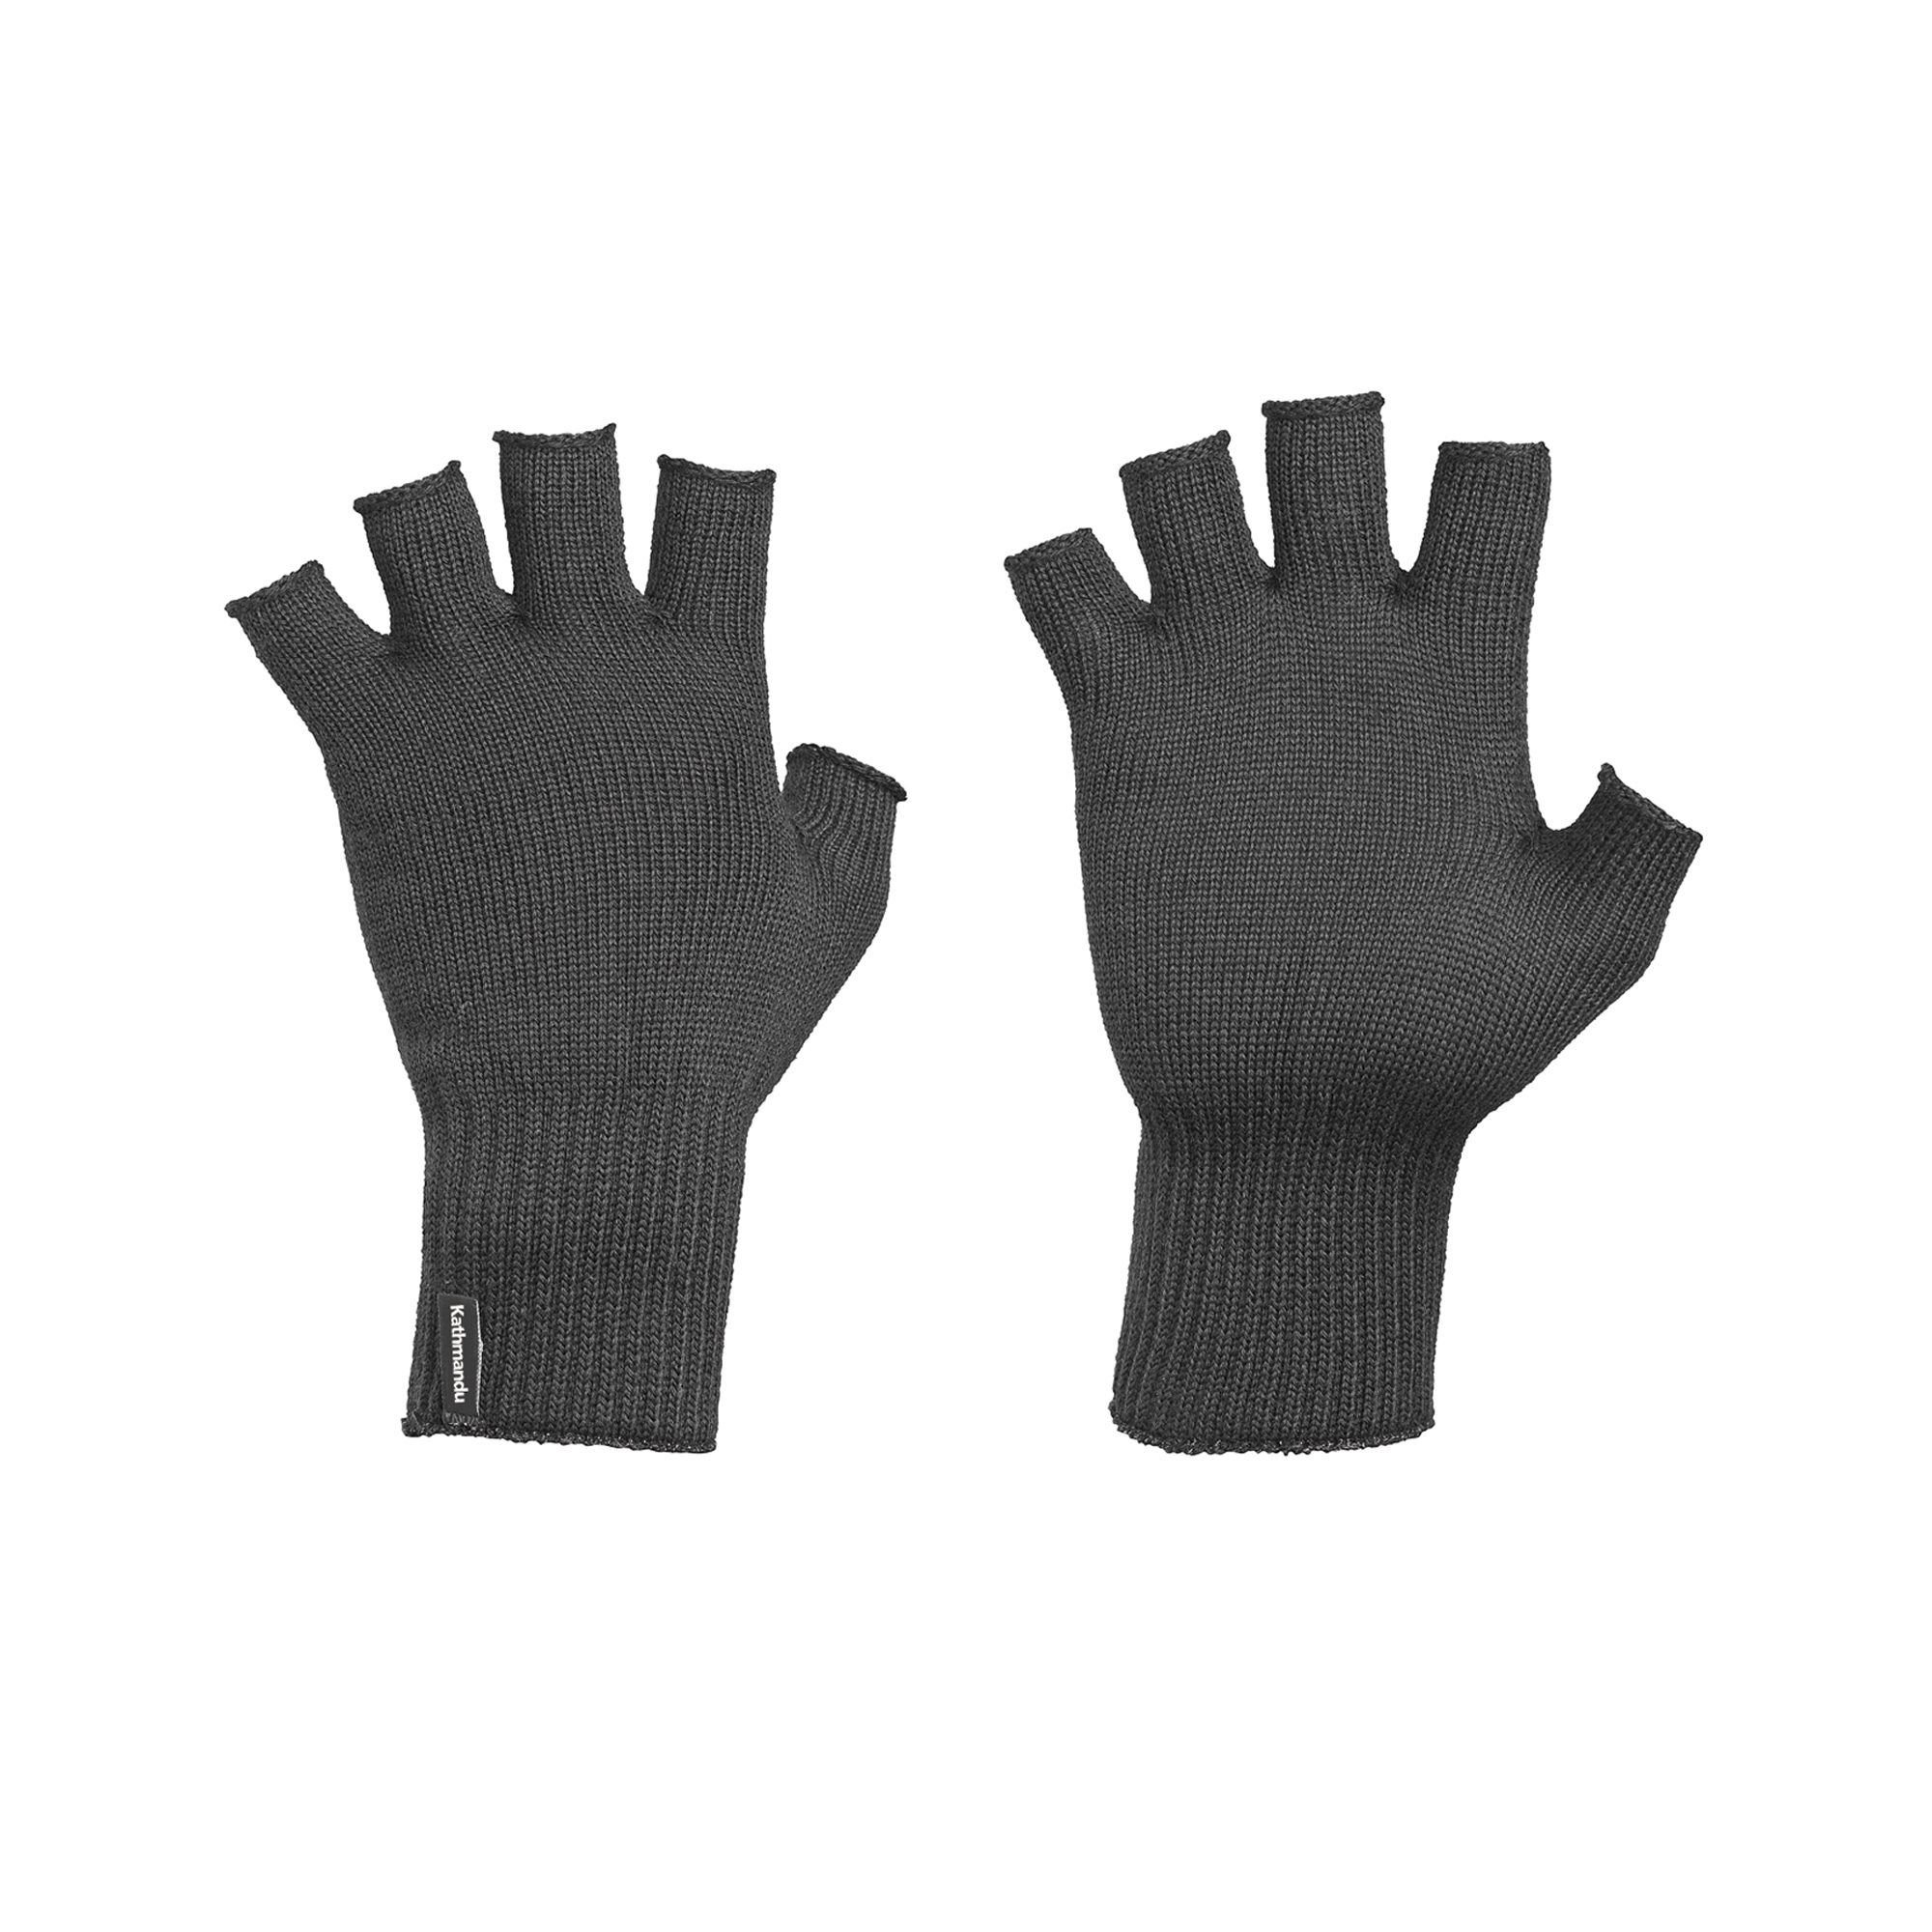 why fingerless gloves